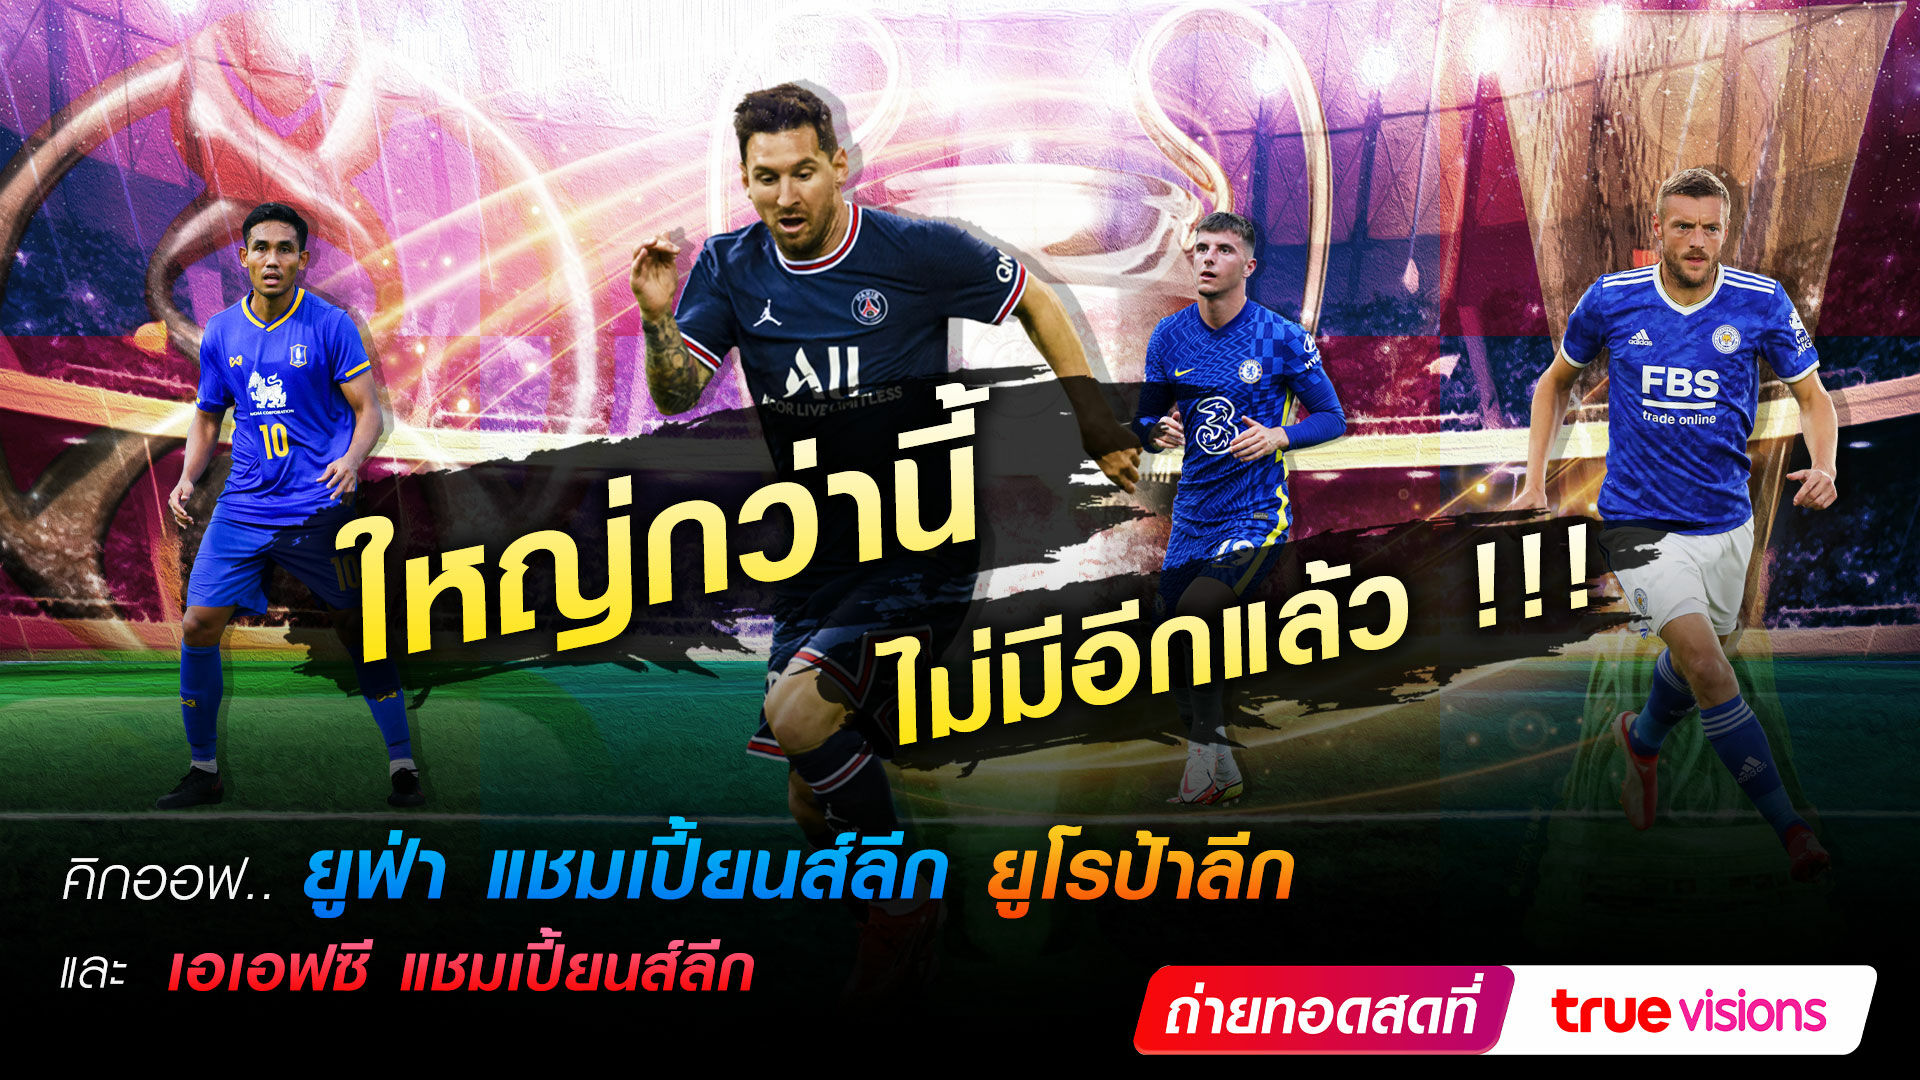 ทรูวิชั่นส์ ยิงสด เอเอฟซี แชมป์เปี้ยนส์ลีก รอบ 16 ทีม เชียร์ทีมไทย บีจี ปทุม ยูไนเต็ด